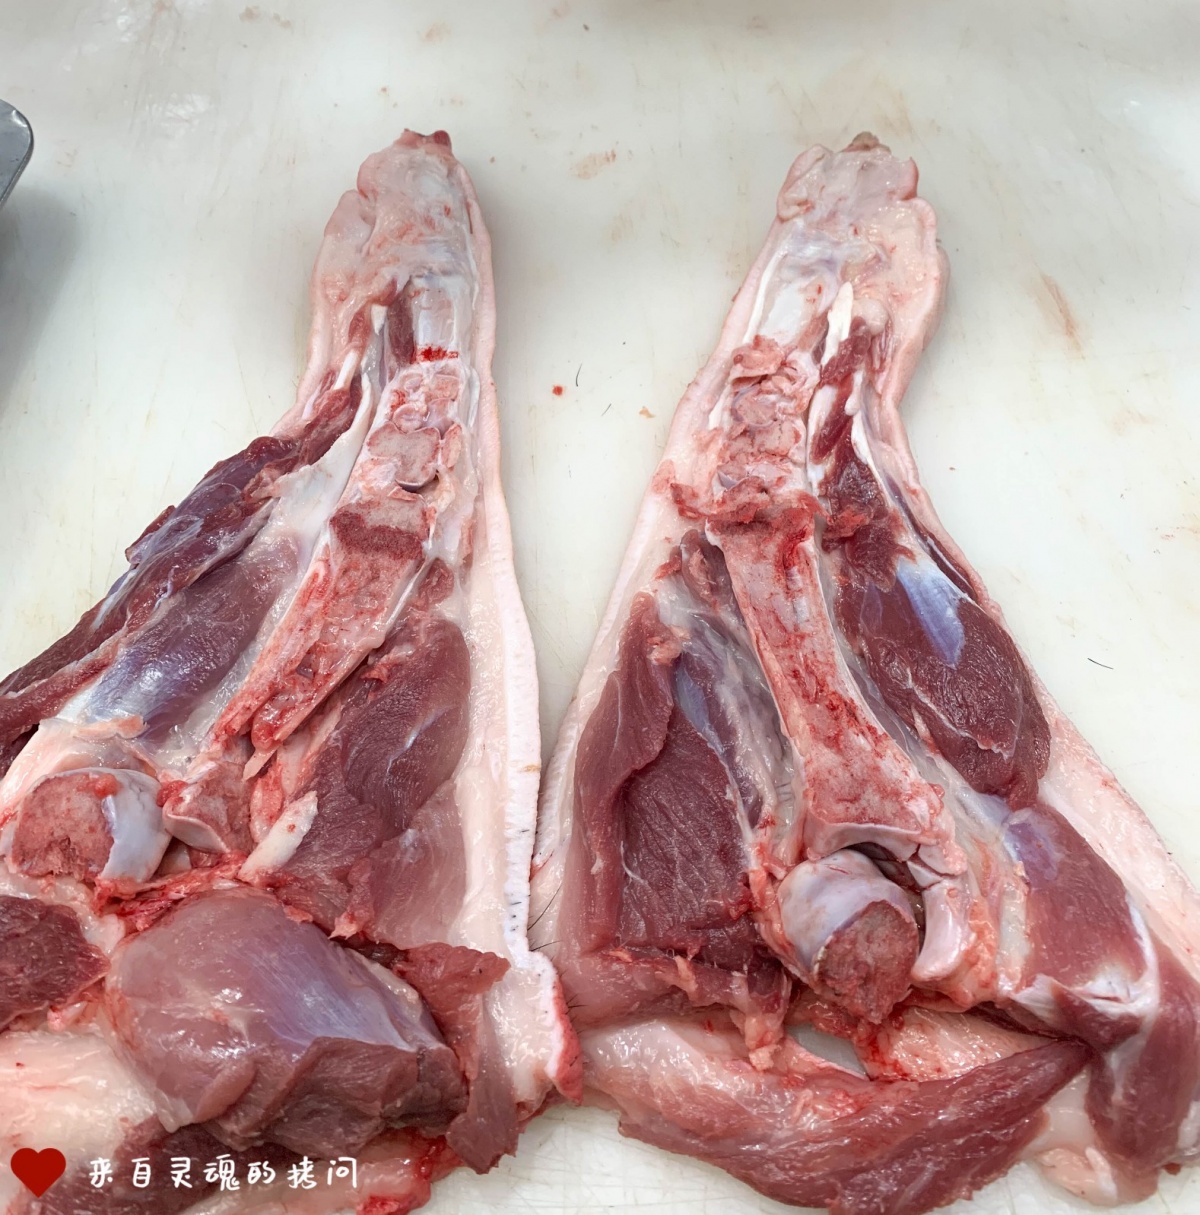 【实地探价④】贵州市场猪肉60元/斤,弹虾55元/斤,物价贵!